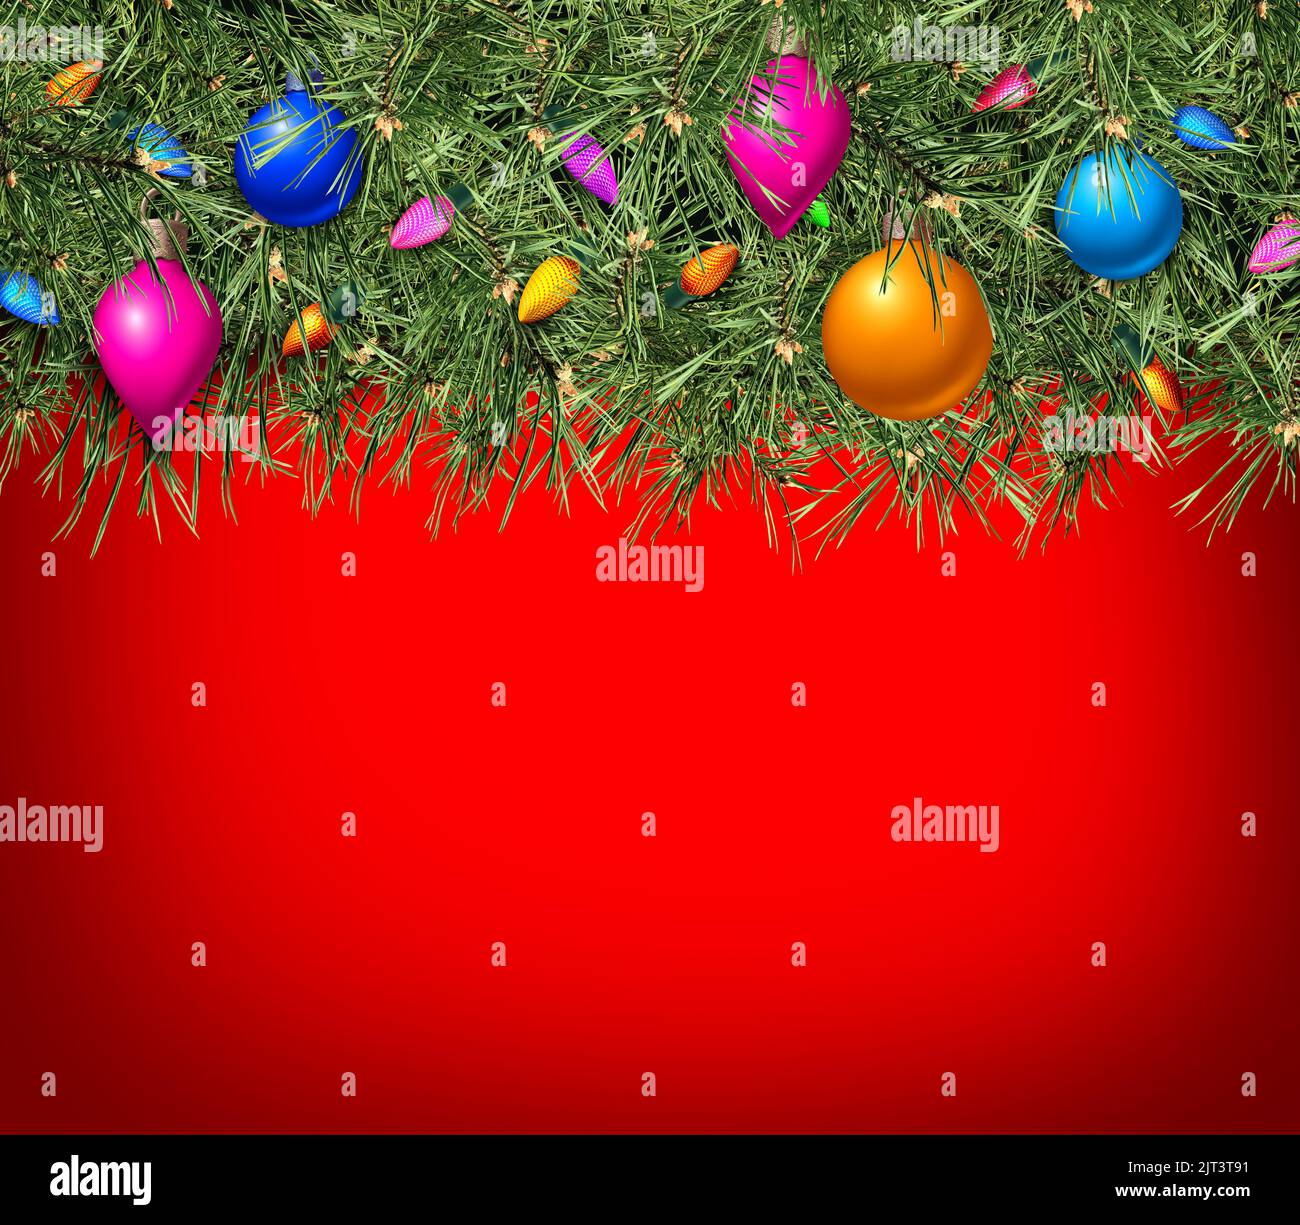 Noël arrière-plan rouge avec arbre de pin à feuilles persistantes et célébration d'hiver x-0mas ornements avec zone de texte comme une promotion de saison de fête Banque D'Images